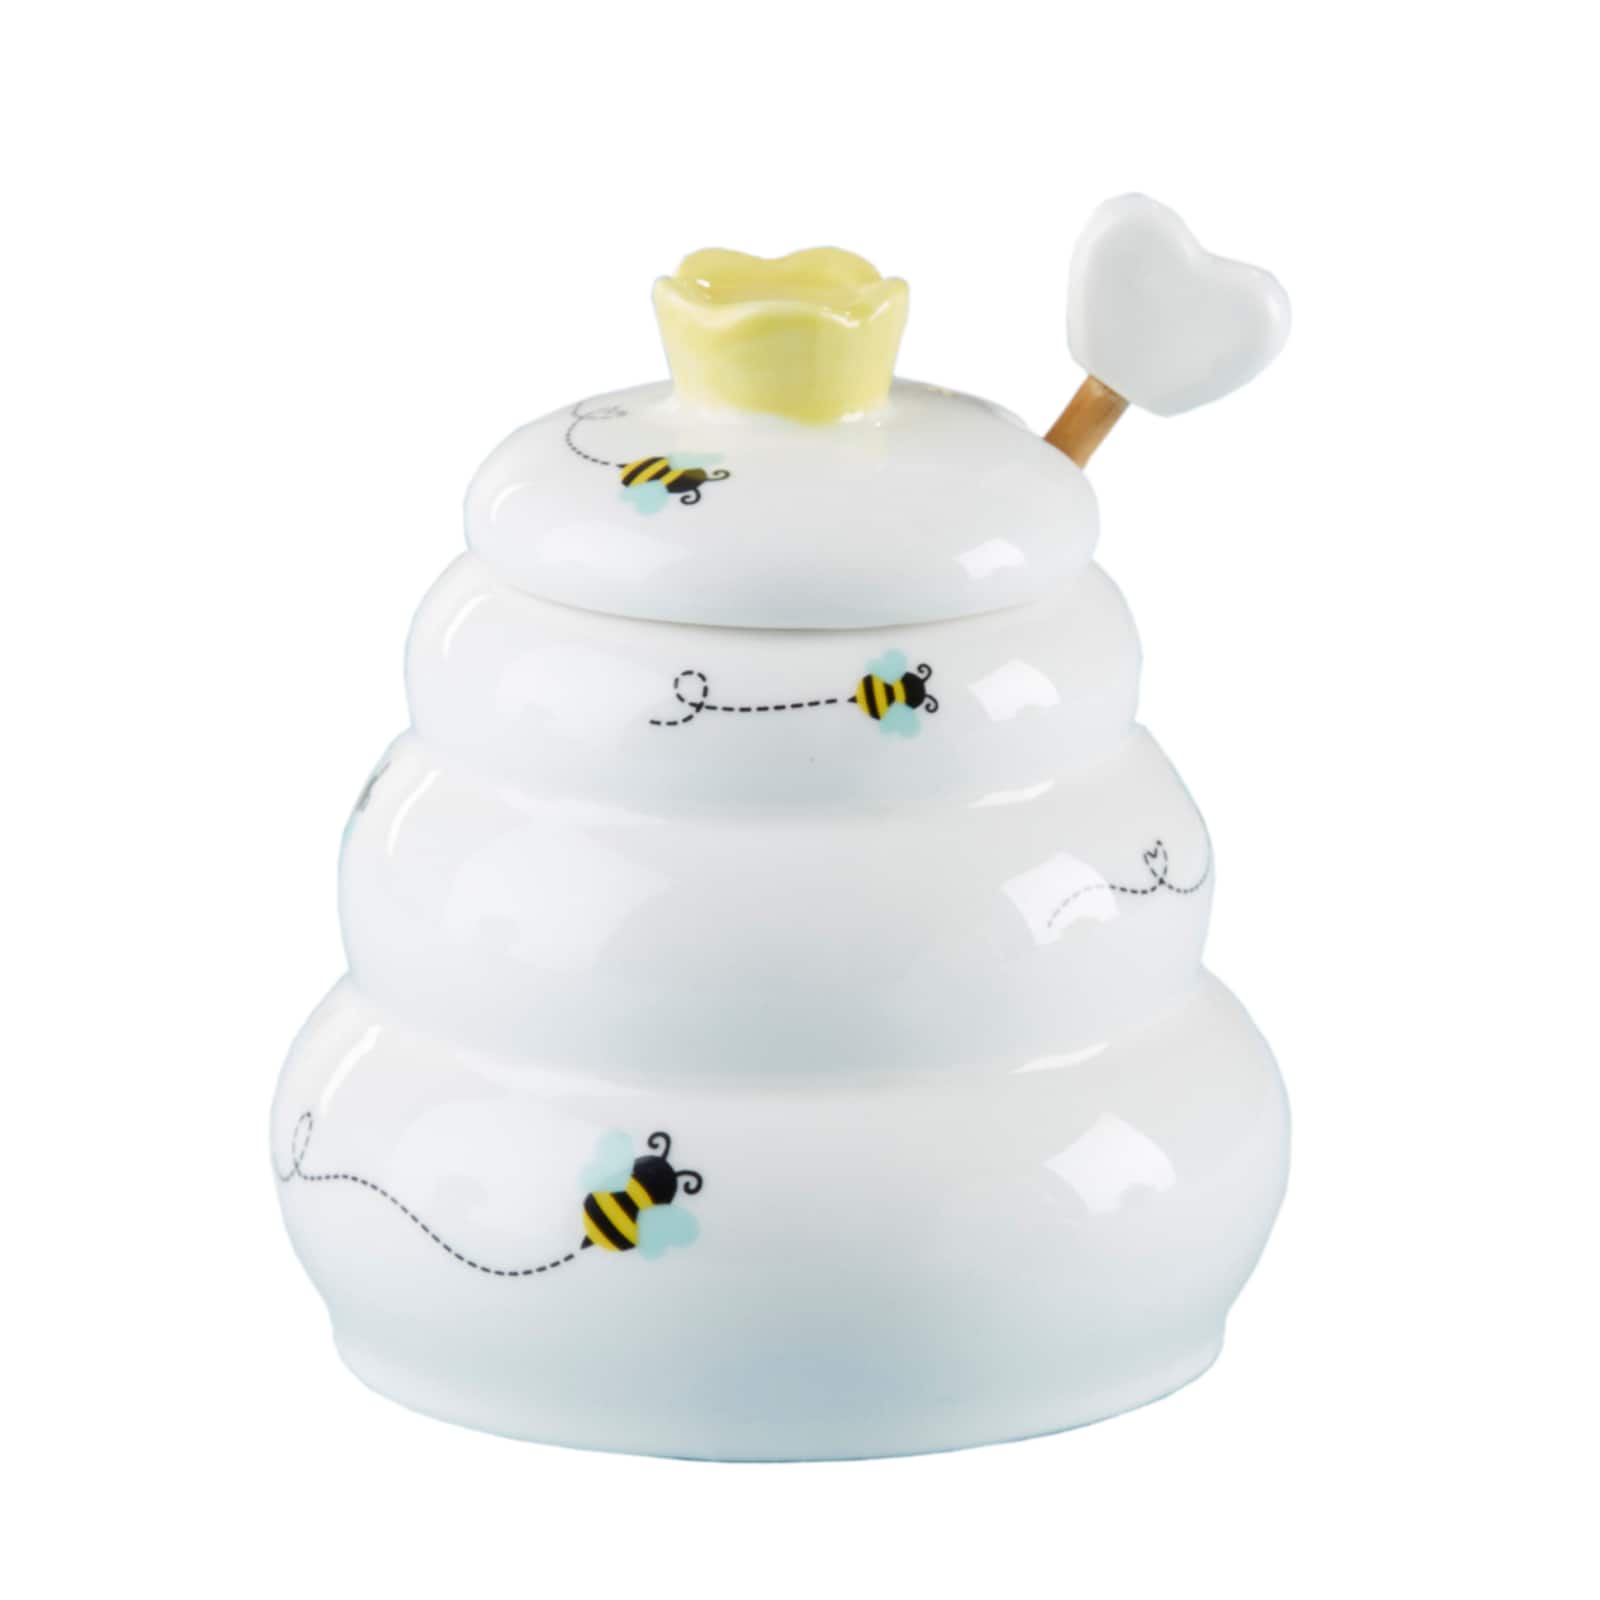 Price & Kensington Sweet Bee Cookie Jar